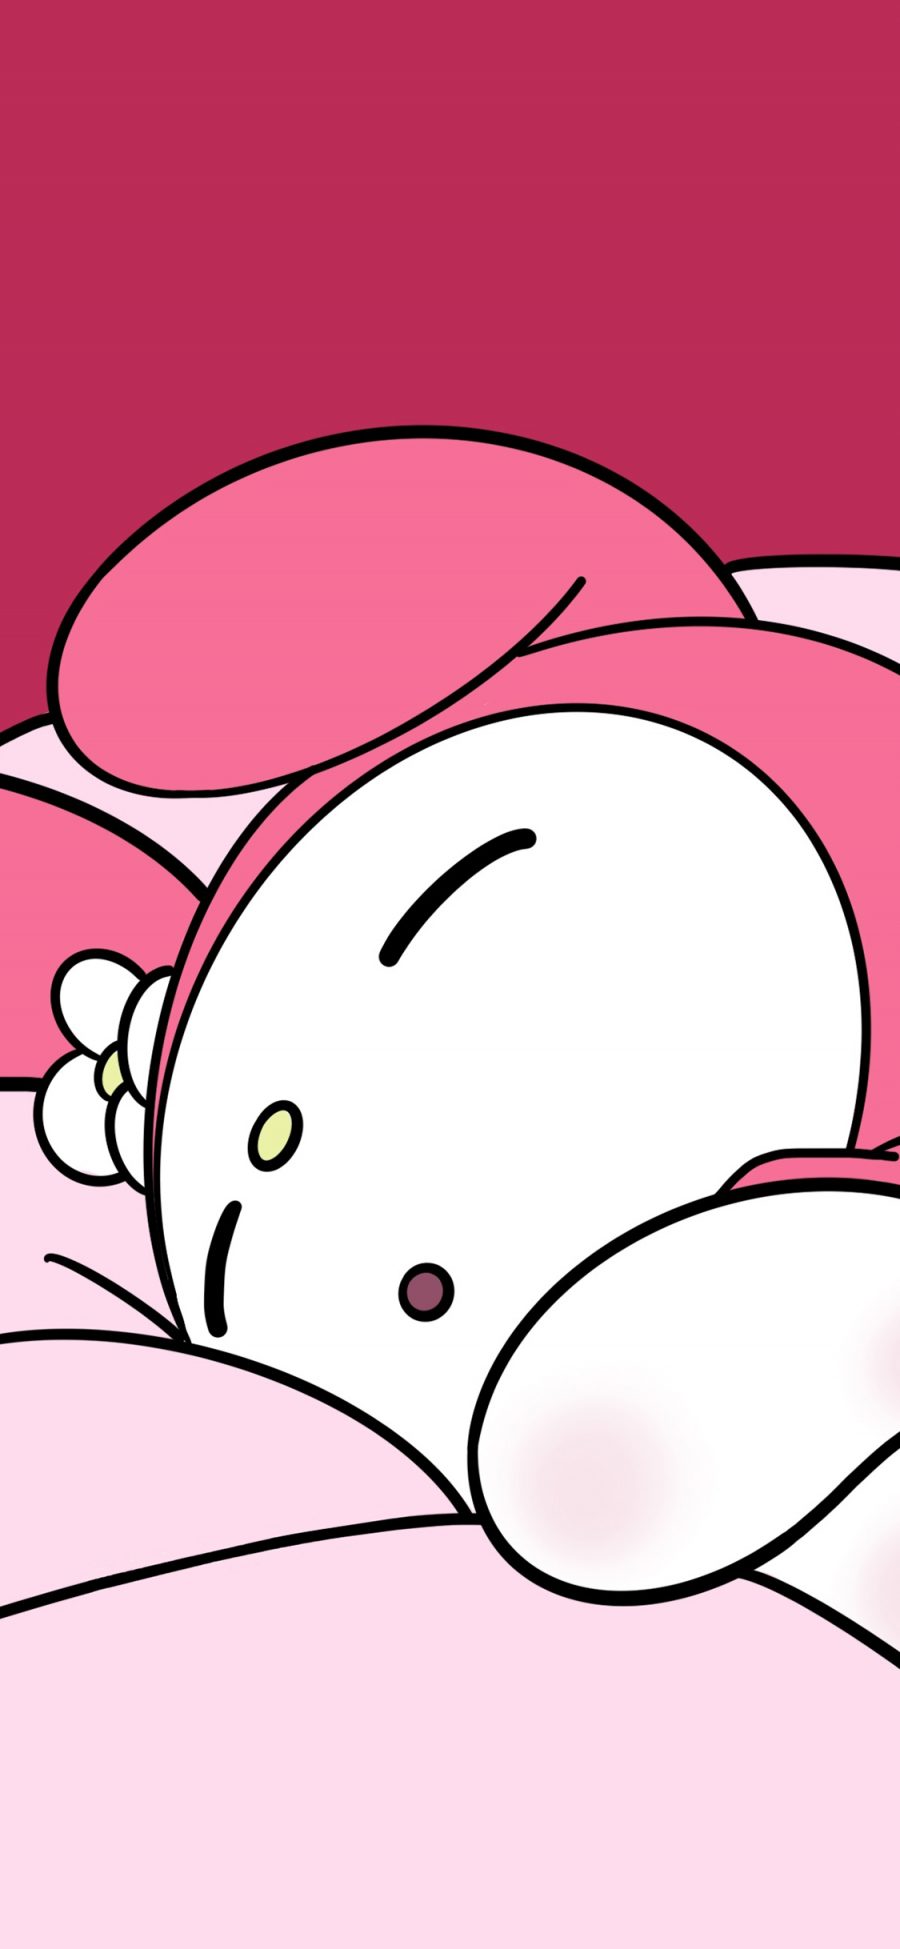 [2436×1125]美乐蒂 melody 动画 粉色 可爱 兔子 苹果手机动漫壁纸图片